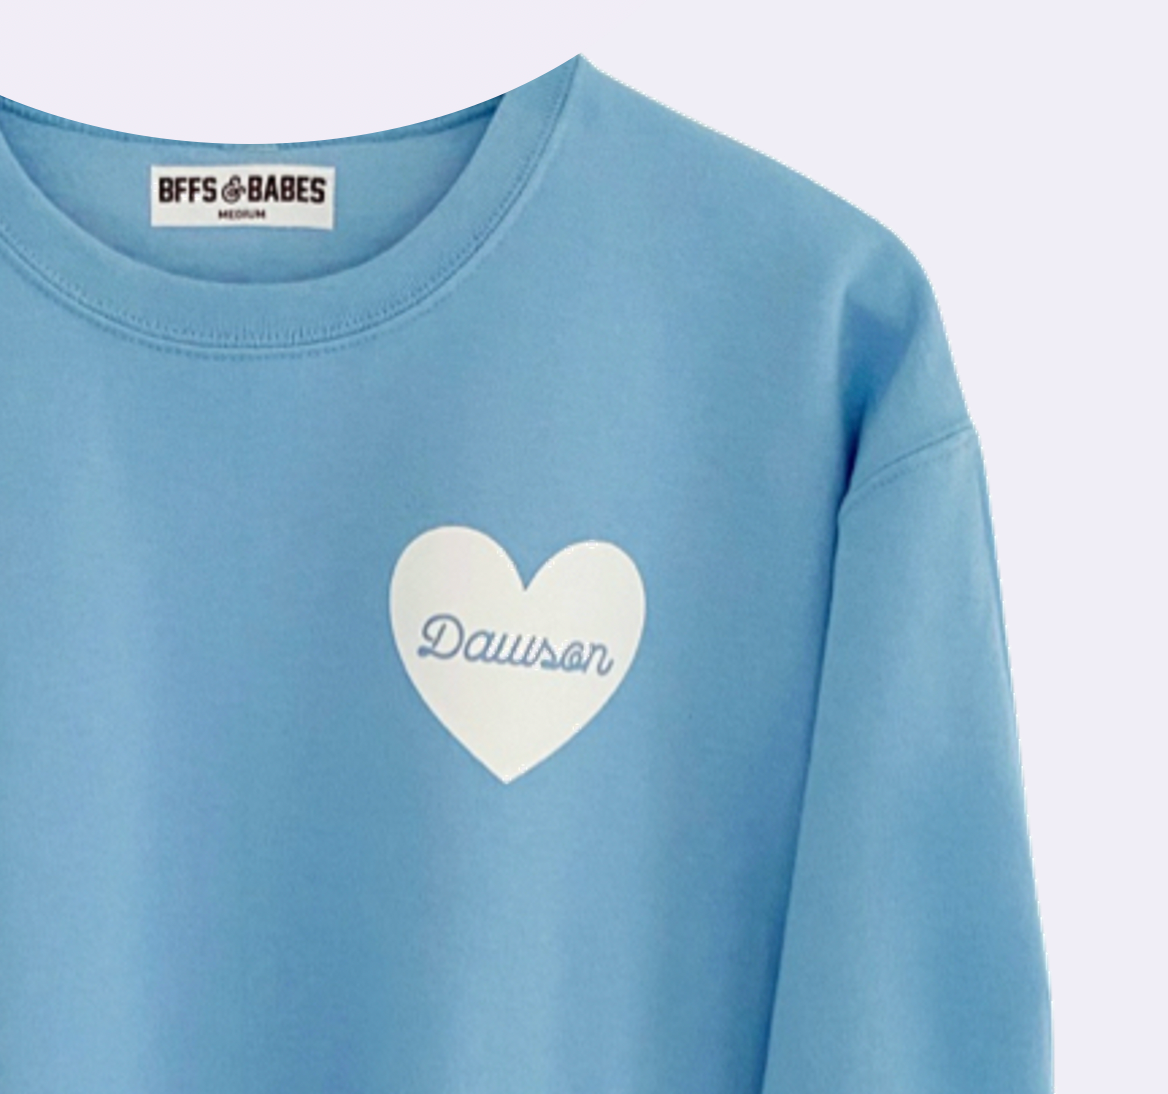 HEART U MOST ♡ light blue personalizable script heart sweatshirt